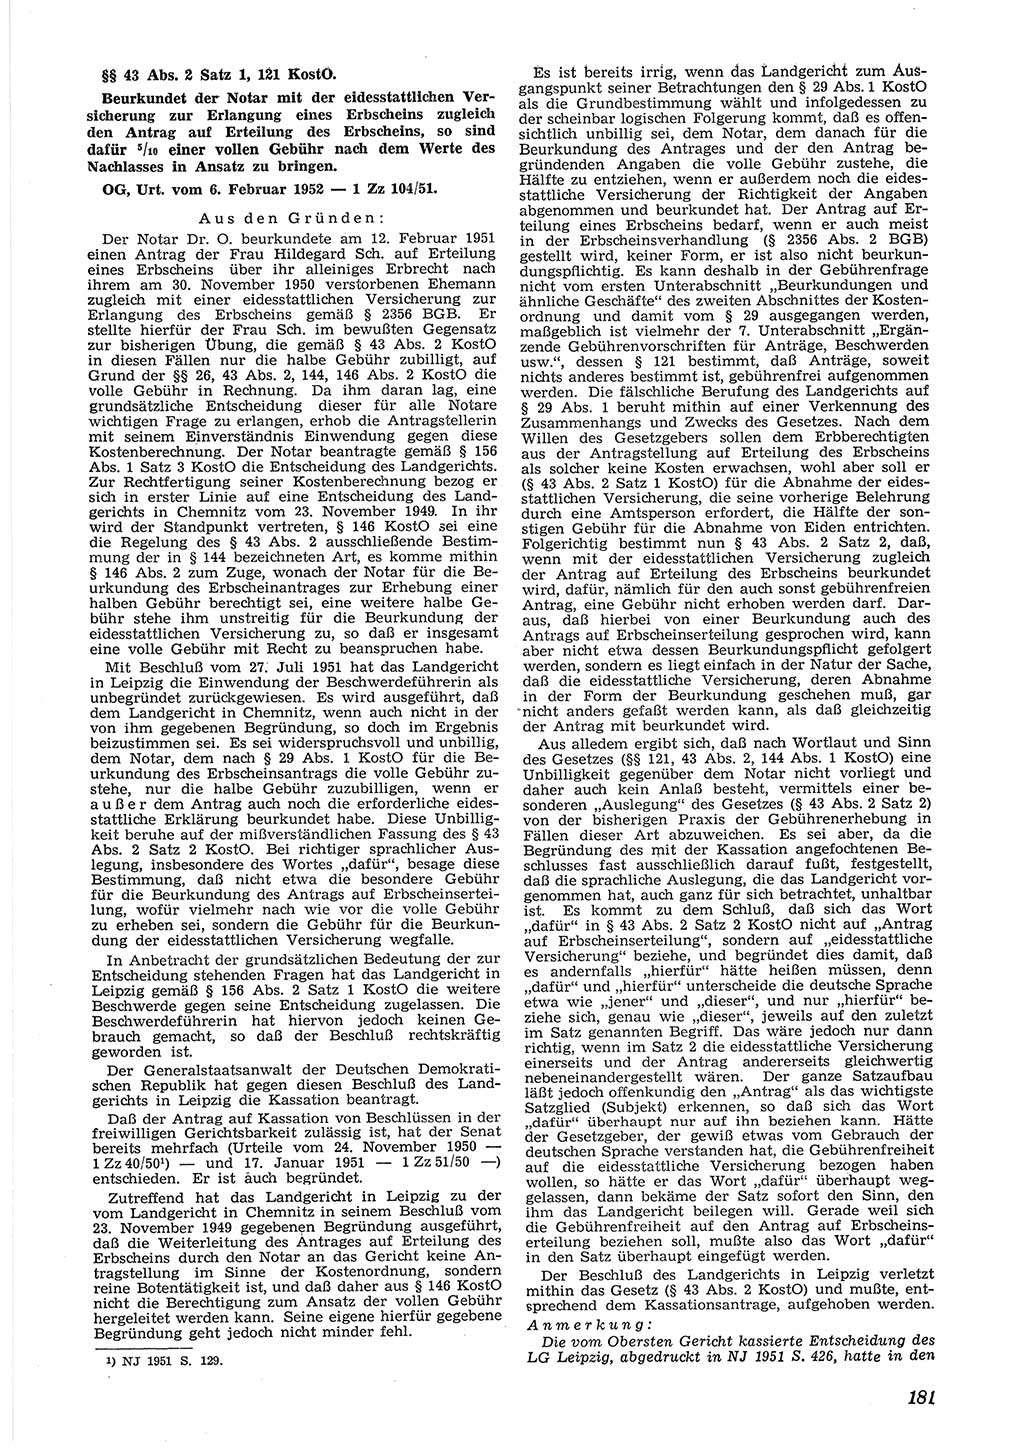 Neue Justiz (NJ), Zeitschrift für Recht und Rechtswissenschaft [Deutsche Demokratische Republik (DDR)], 6. Jahrgang 1952, Seite 181 (NJ DDR 1952, S. 181)